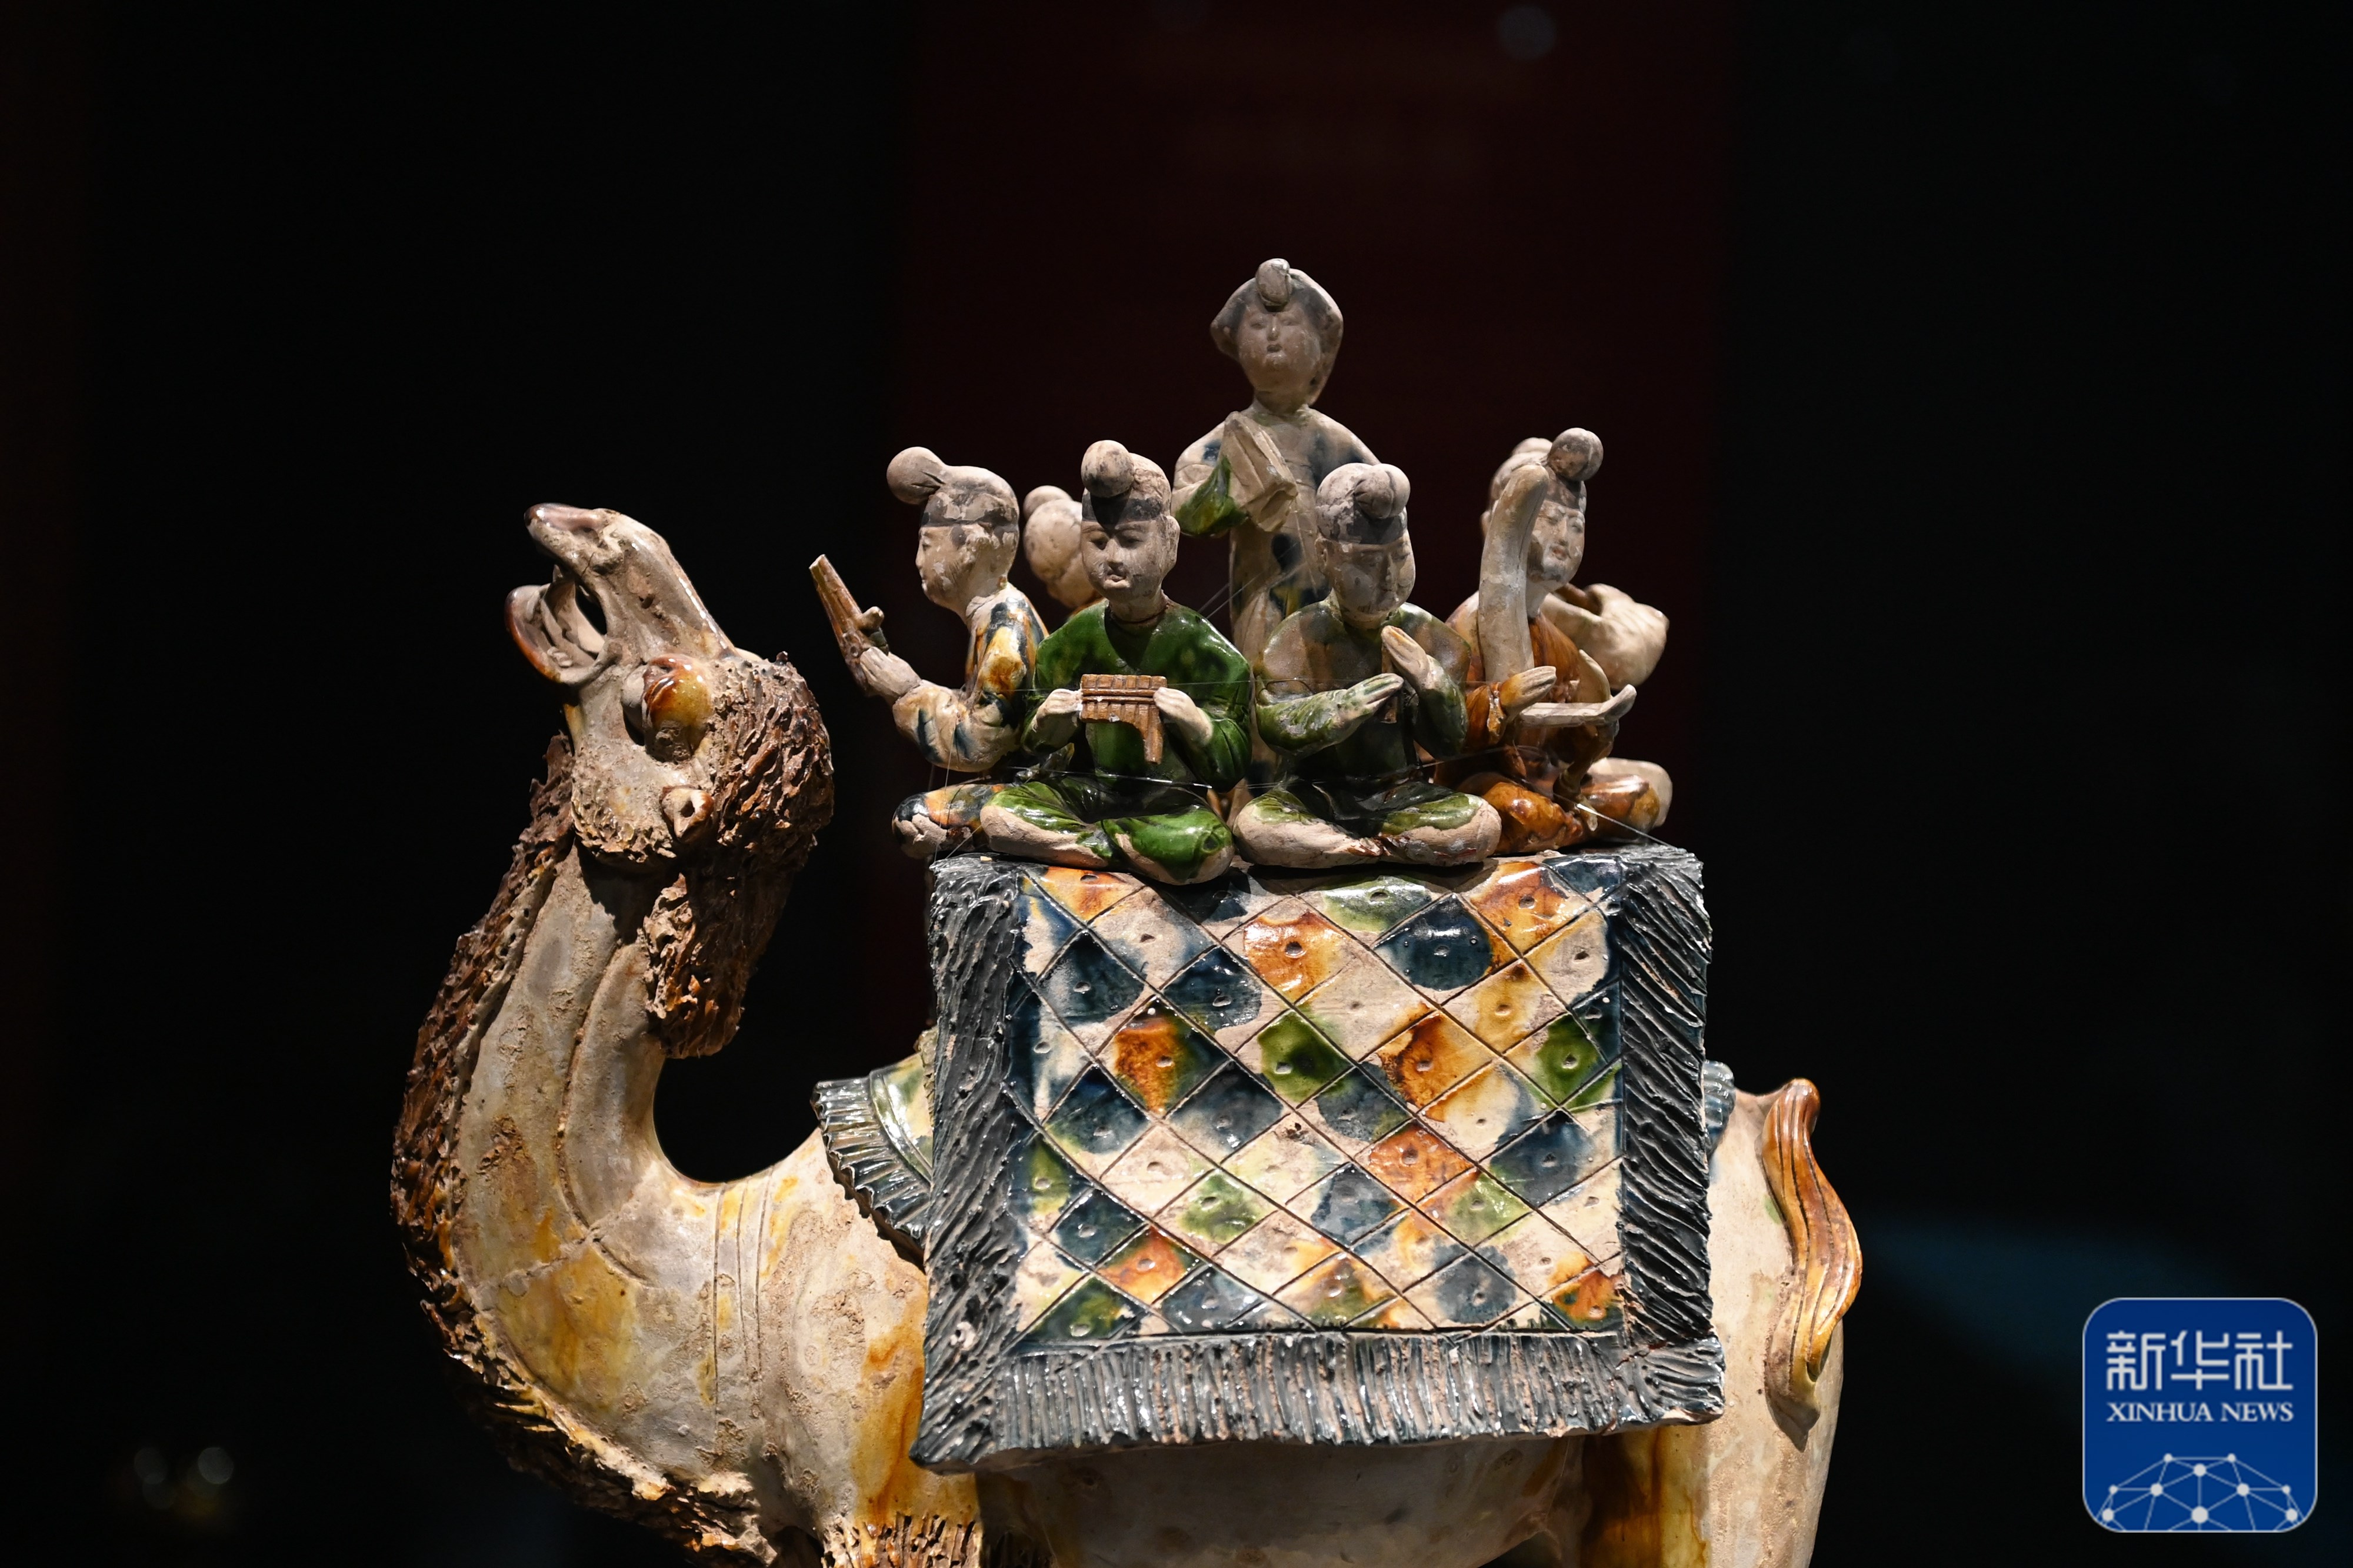 这是在陕西历史博物馆拍摄的唐三彩骆驼载乐俑(5月11日摄)